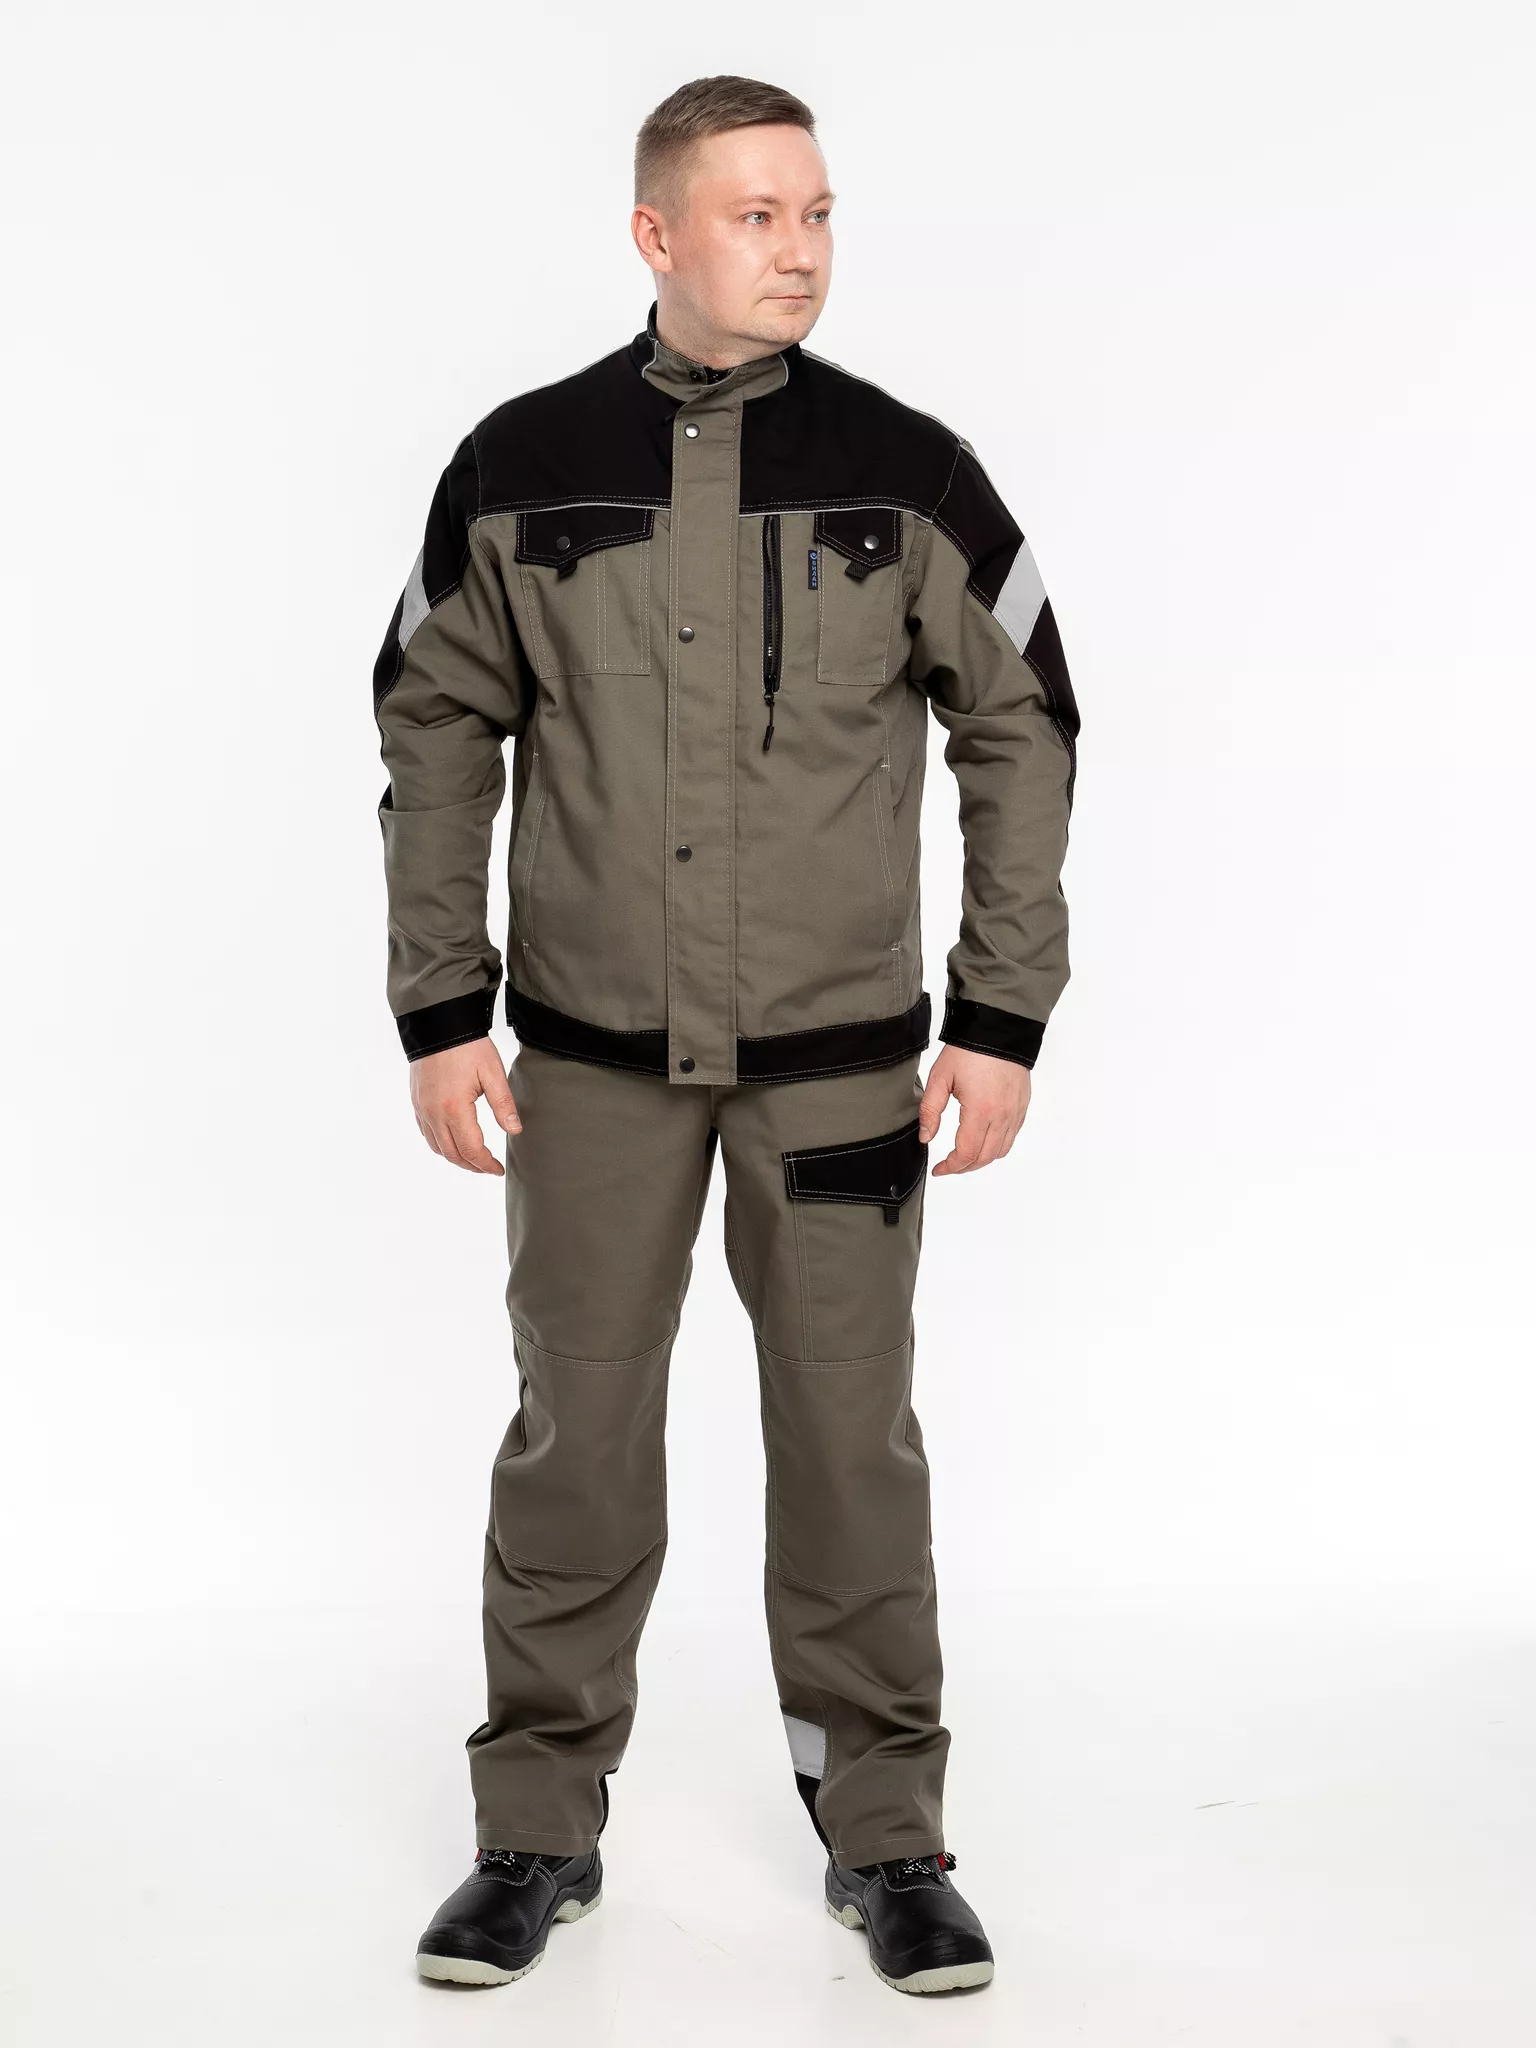 Куртка рабочая КР.366 р.60-62, рост 182-188 (цвет оливковый, отделка черная.СОП)